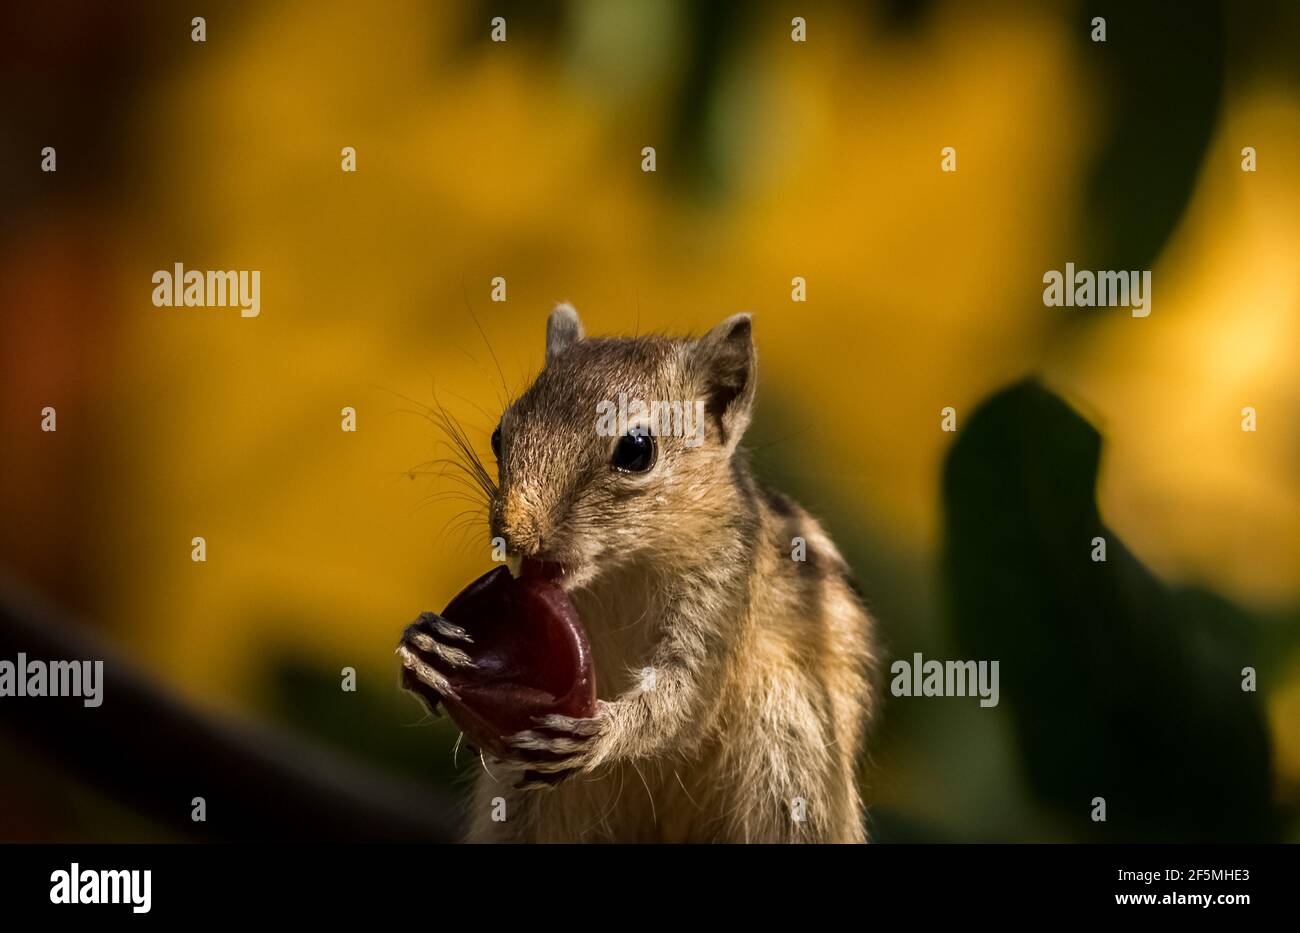 Bébé écureuil Eating fruit. Images de l'écureuil de palmier indien mignon. Banque D'Images